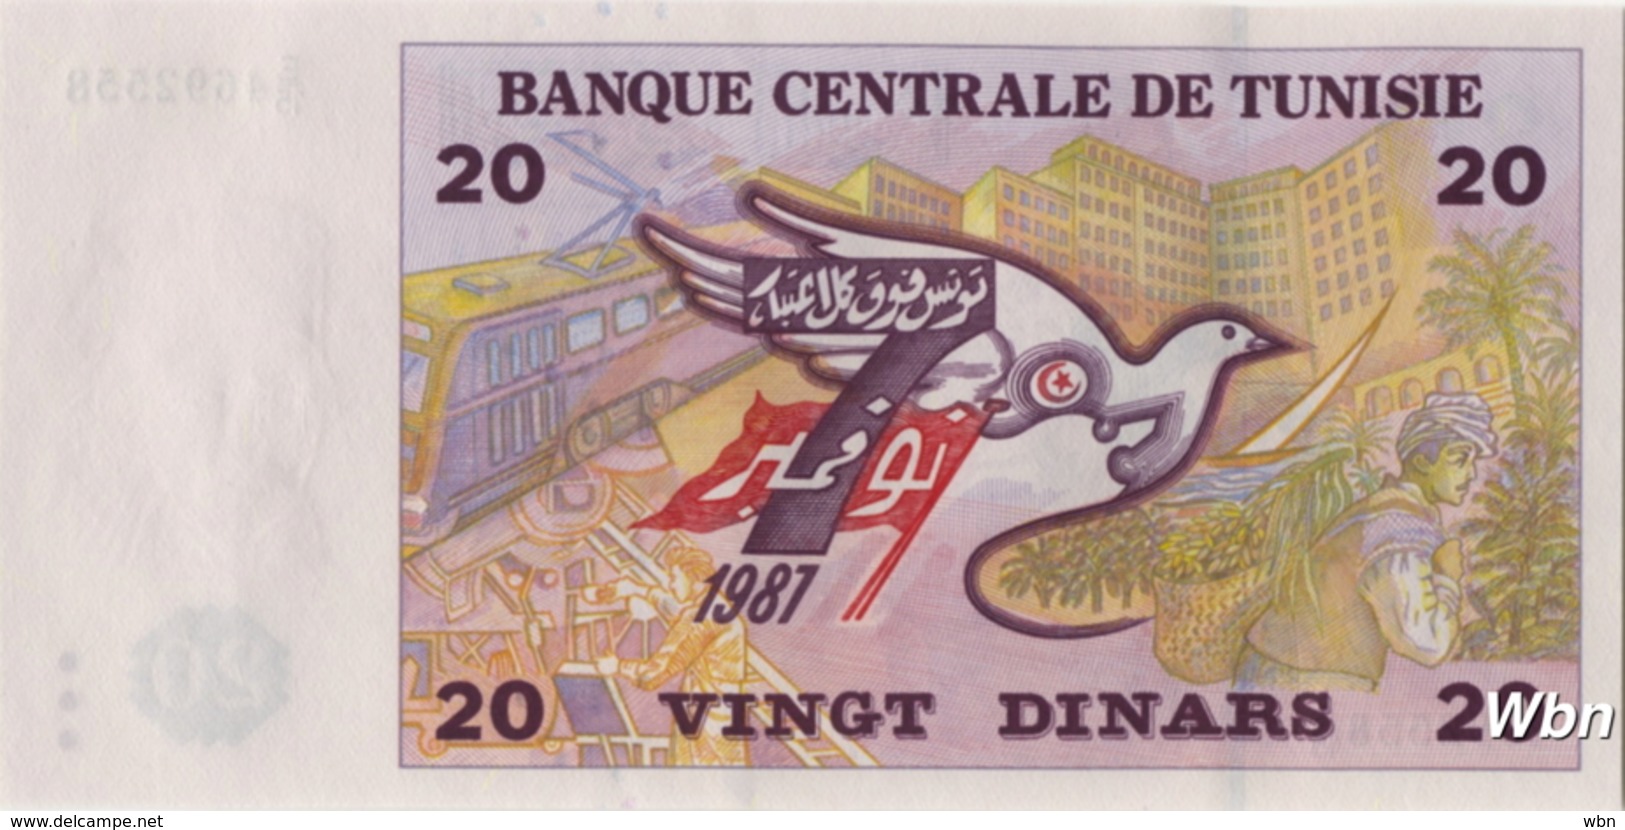 Tunisie 20 Dinars (P88) 1992 (Pref: E/15) -UNC- - Tunisia